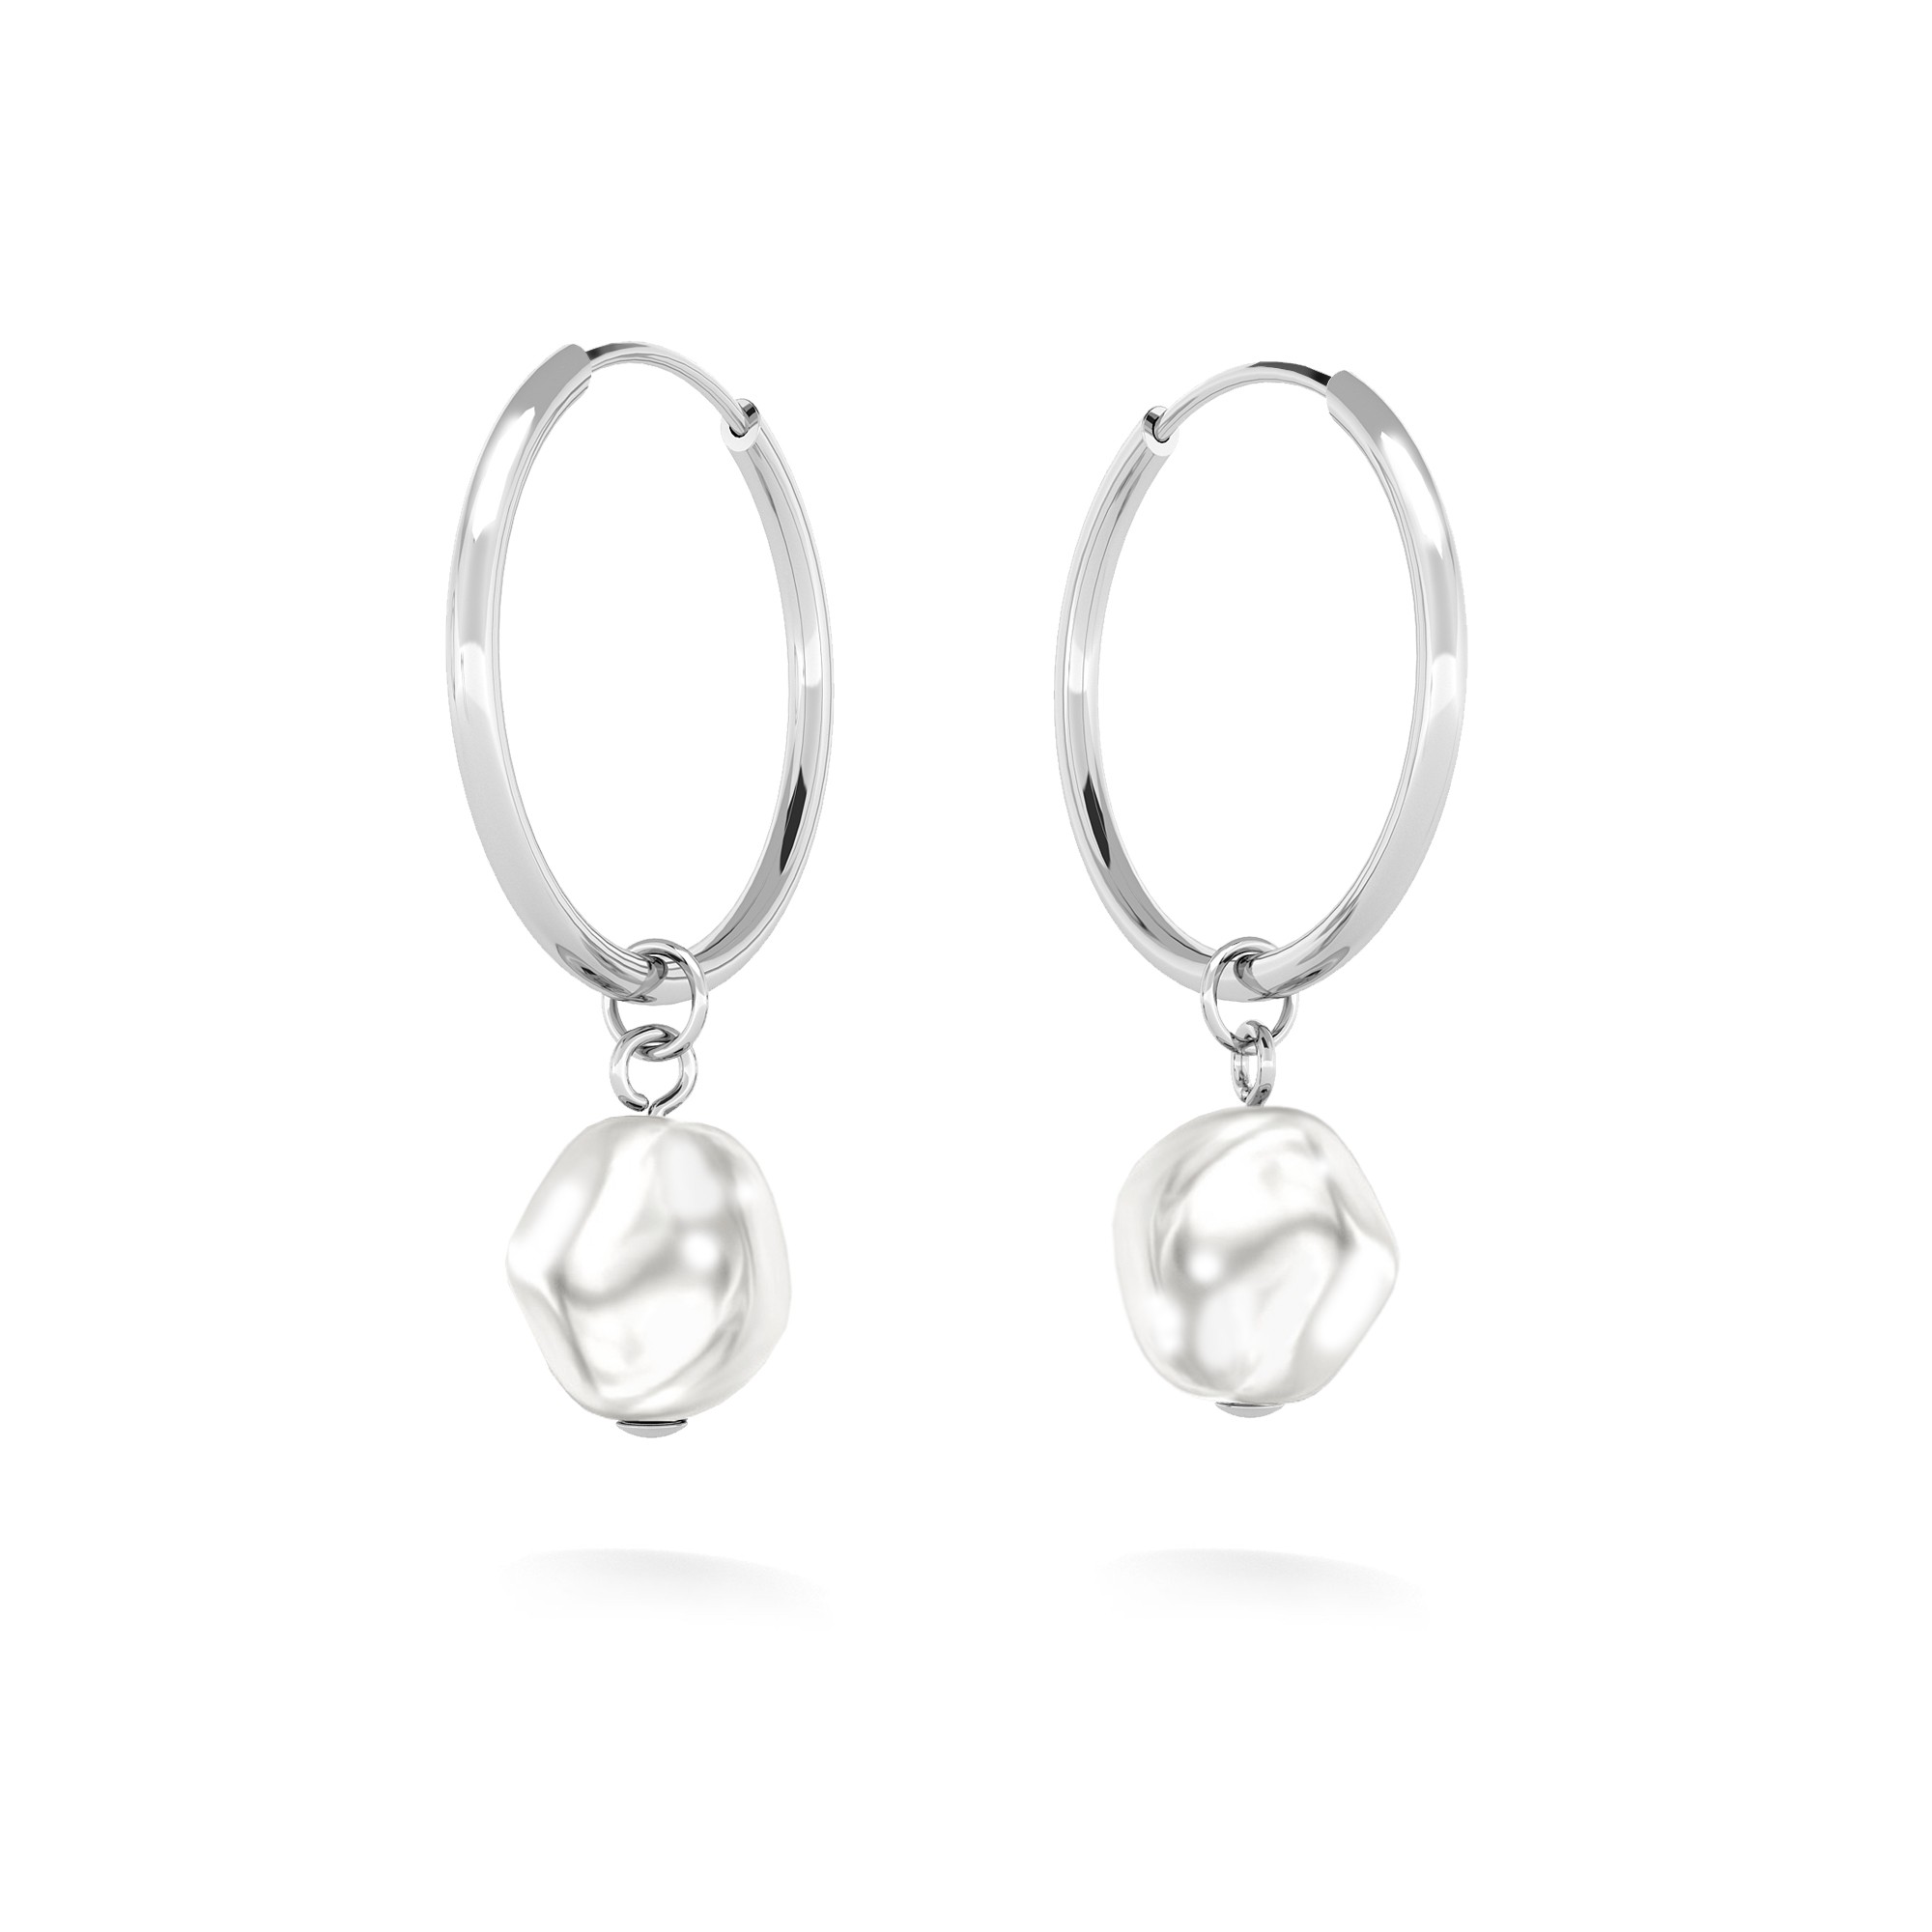 Hoop earrings with pearl, sterling silver 925